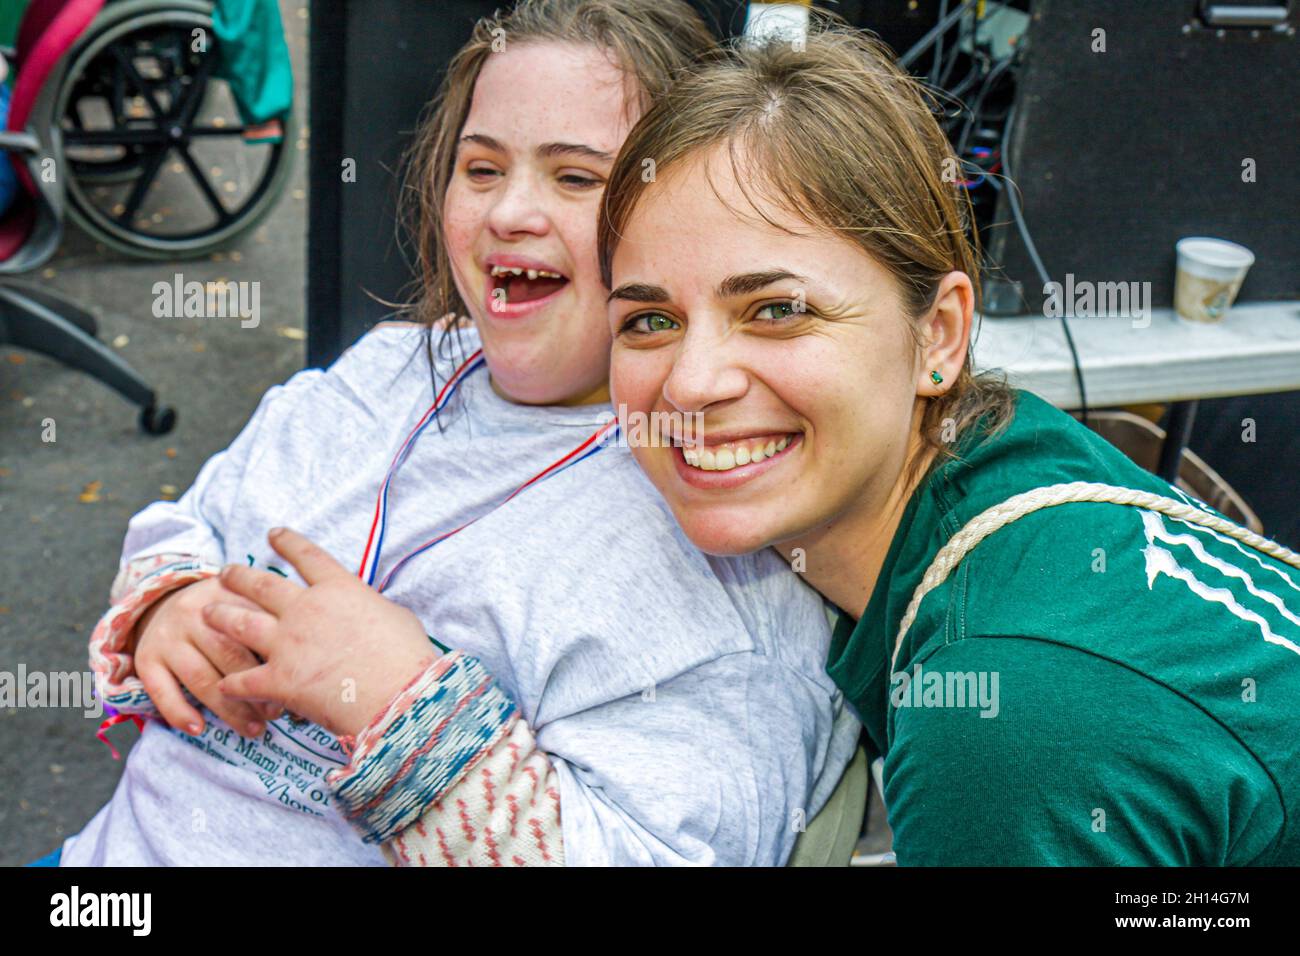 Miami Florida,sviluppato sfidato mentalmente disabili sindrome di Down,volontario donna ragazza teen teen teenager sorridente felice Foto Stock